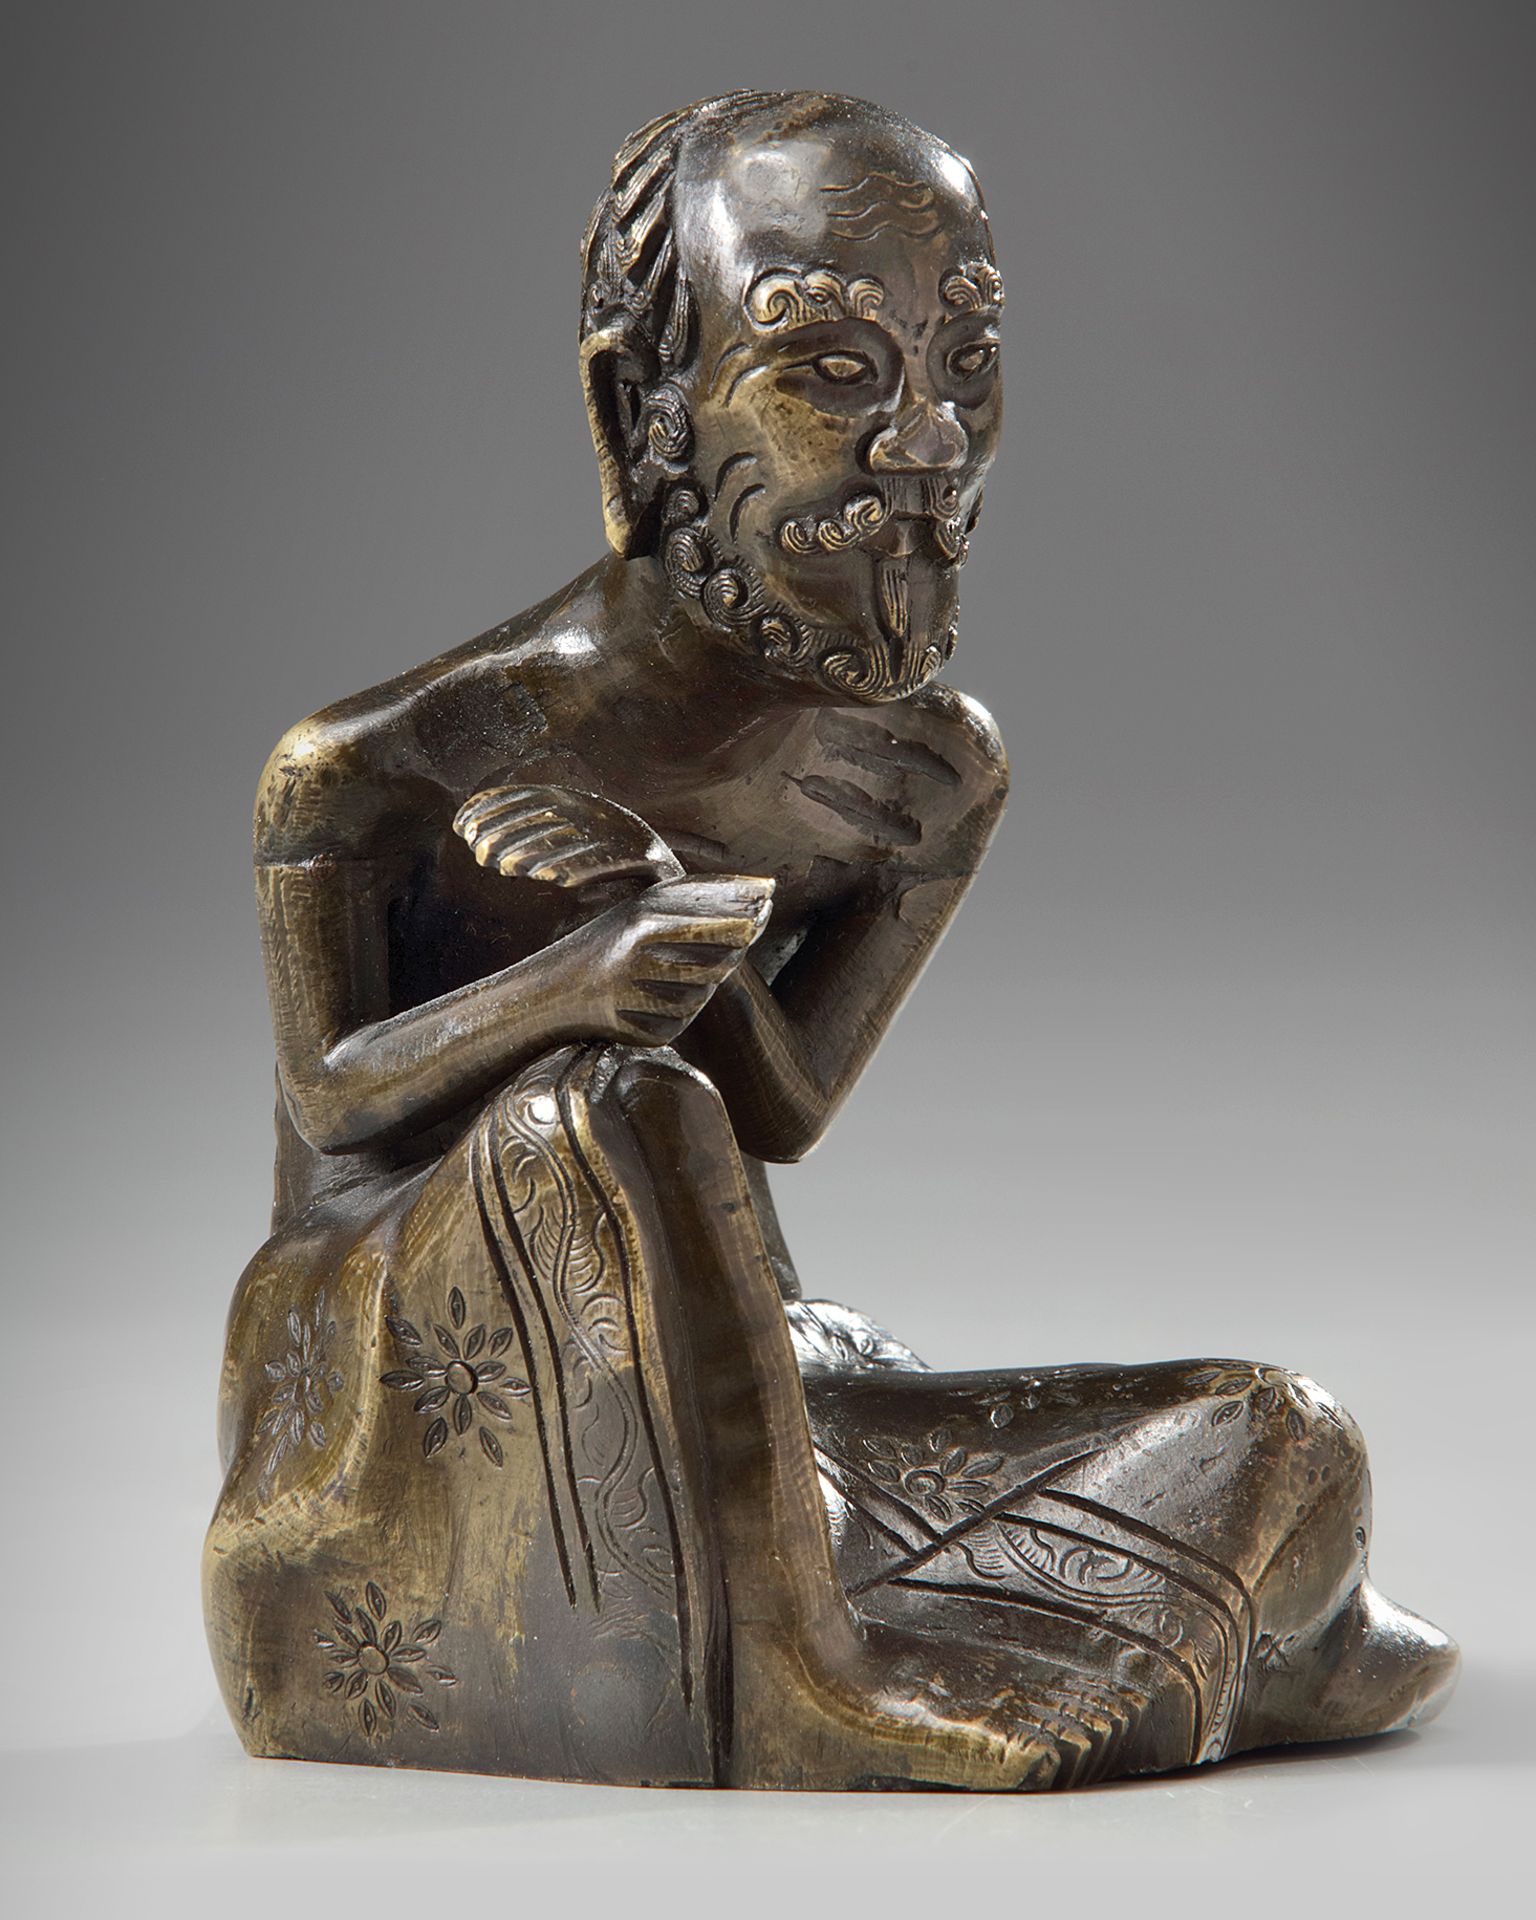 A Chinese bronze figure of the ascetic Shakyamuni